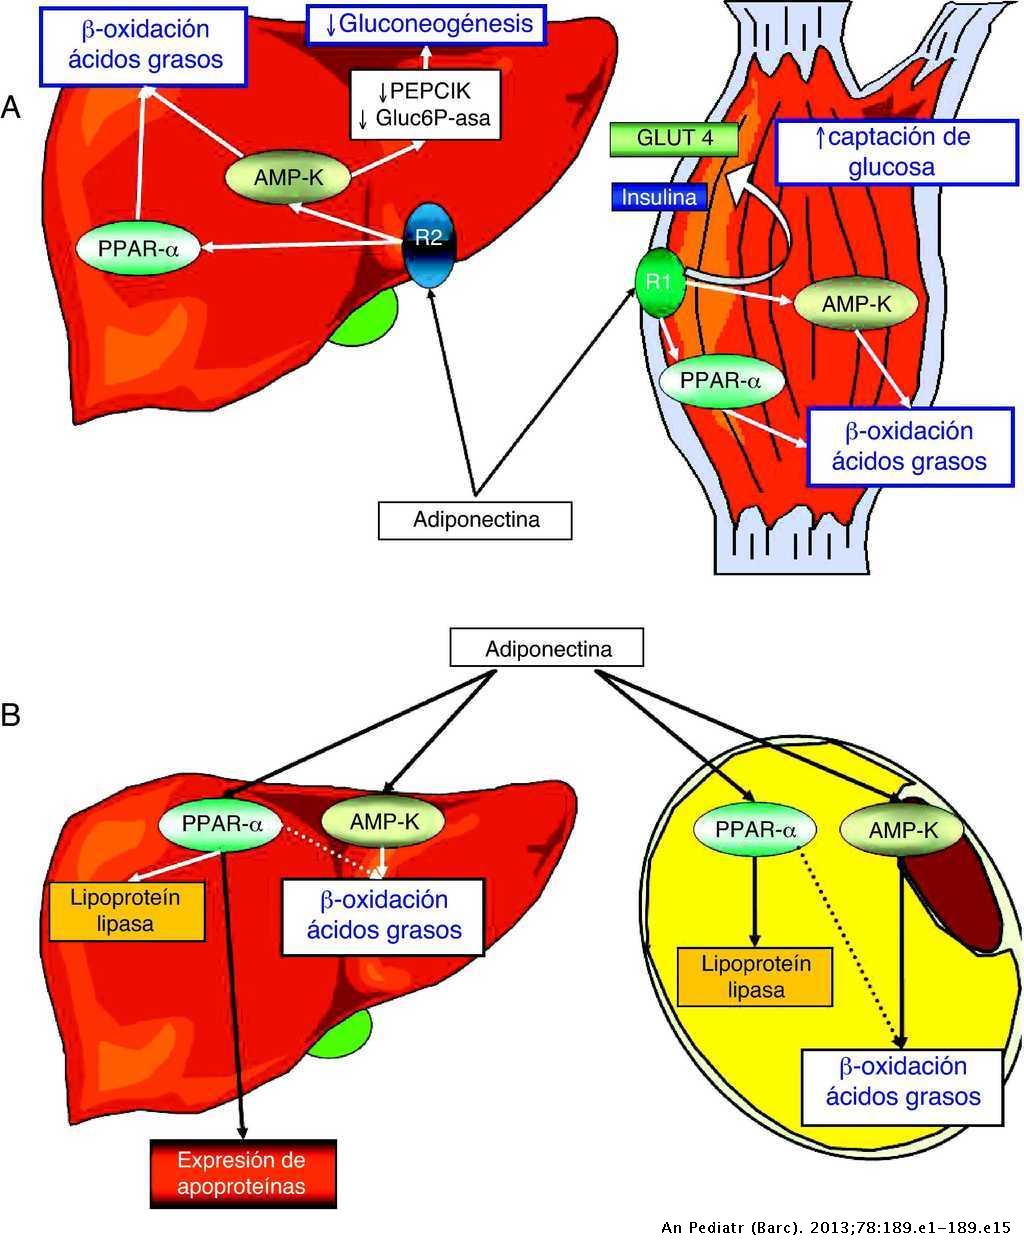 Maniquíes aproximadamente explique la funcion del atp en el metabolismo celular